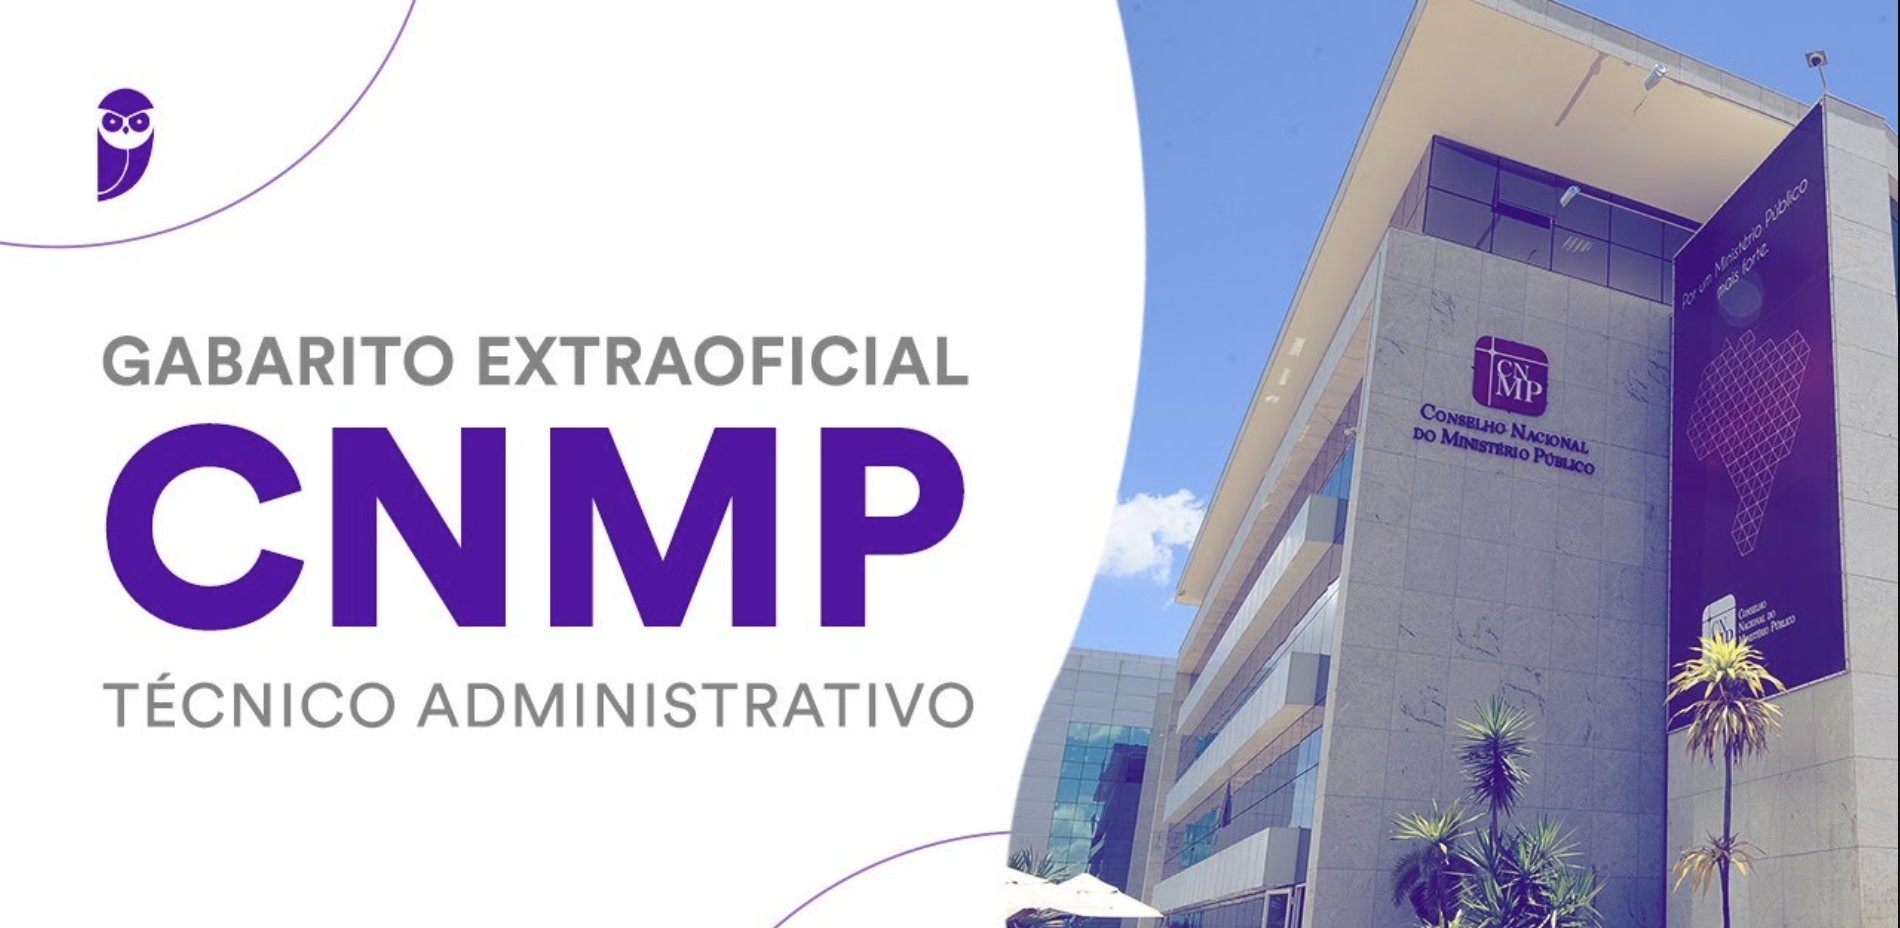 Gabarito CNMP: correção extraoficial - Técnico Administrativo